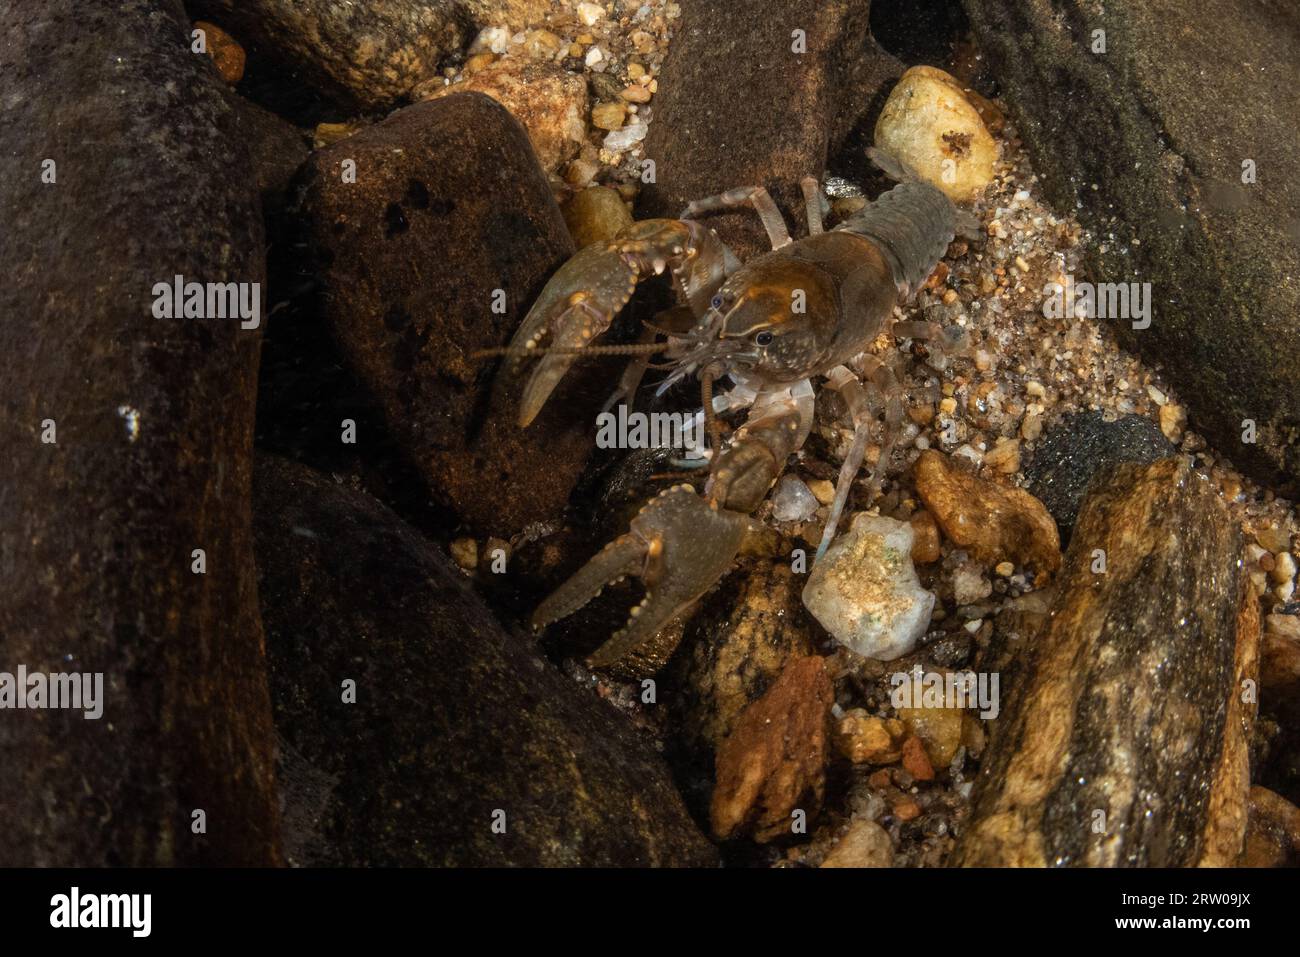 Un gambero d'acqua dolce, Cambarus Species, proveniente da un ruscello d'acqua dolce della Carolina del Nord, Stati Uniti. Foto Stock